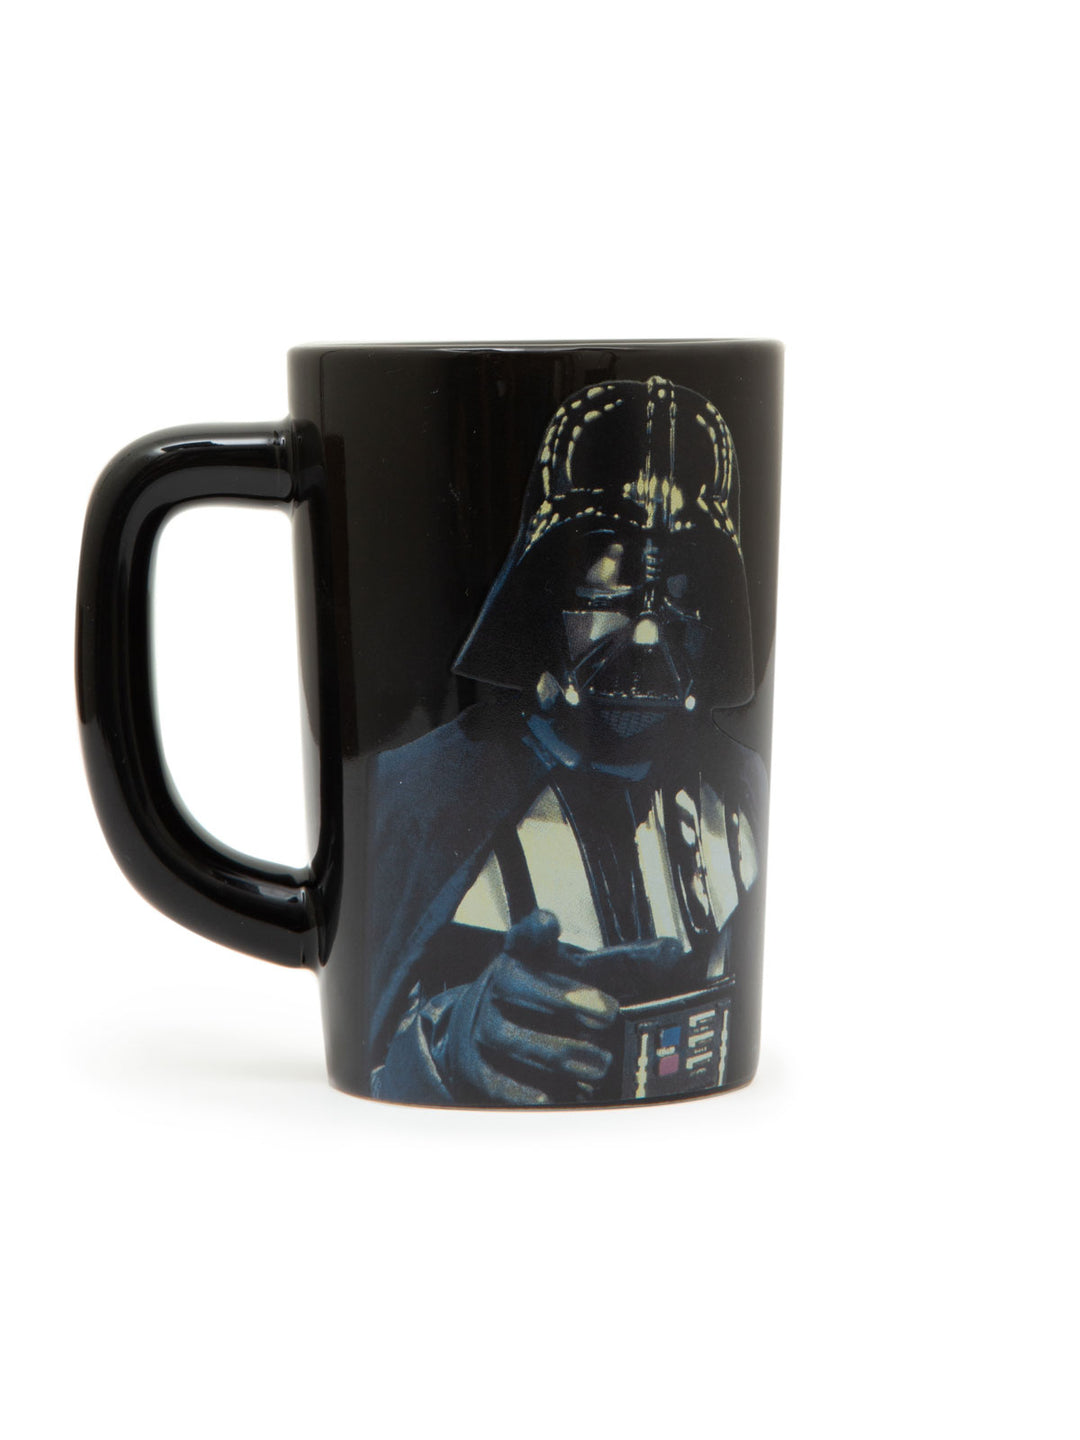 Read Darth Vader Mug - Main Image Number 1 of 2